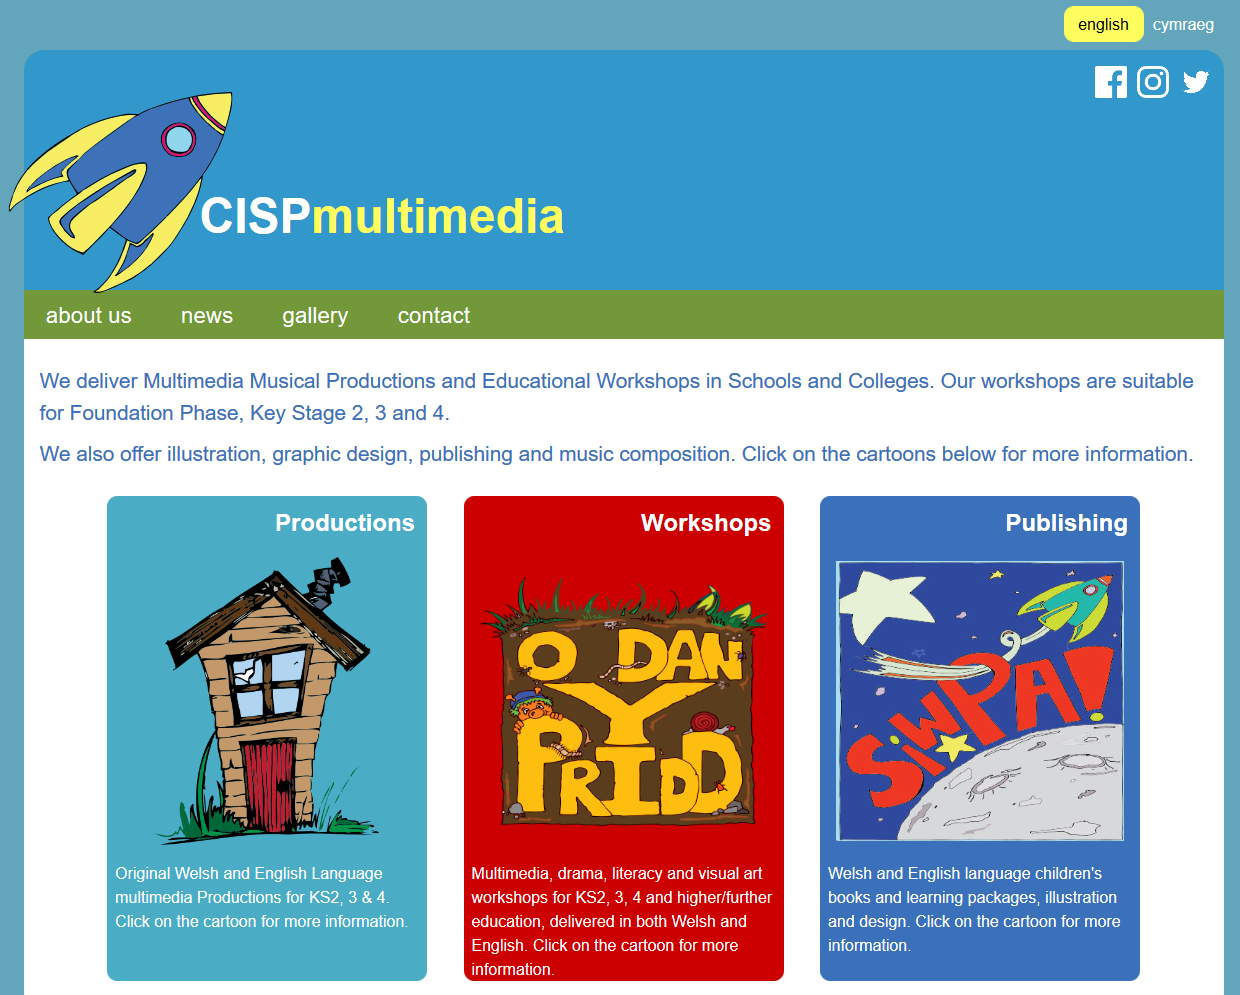 CISP Multimedia